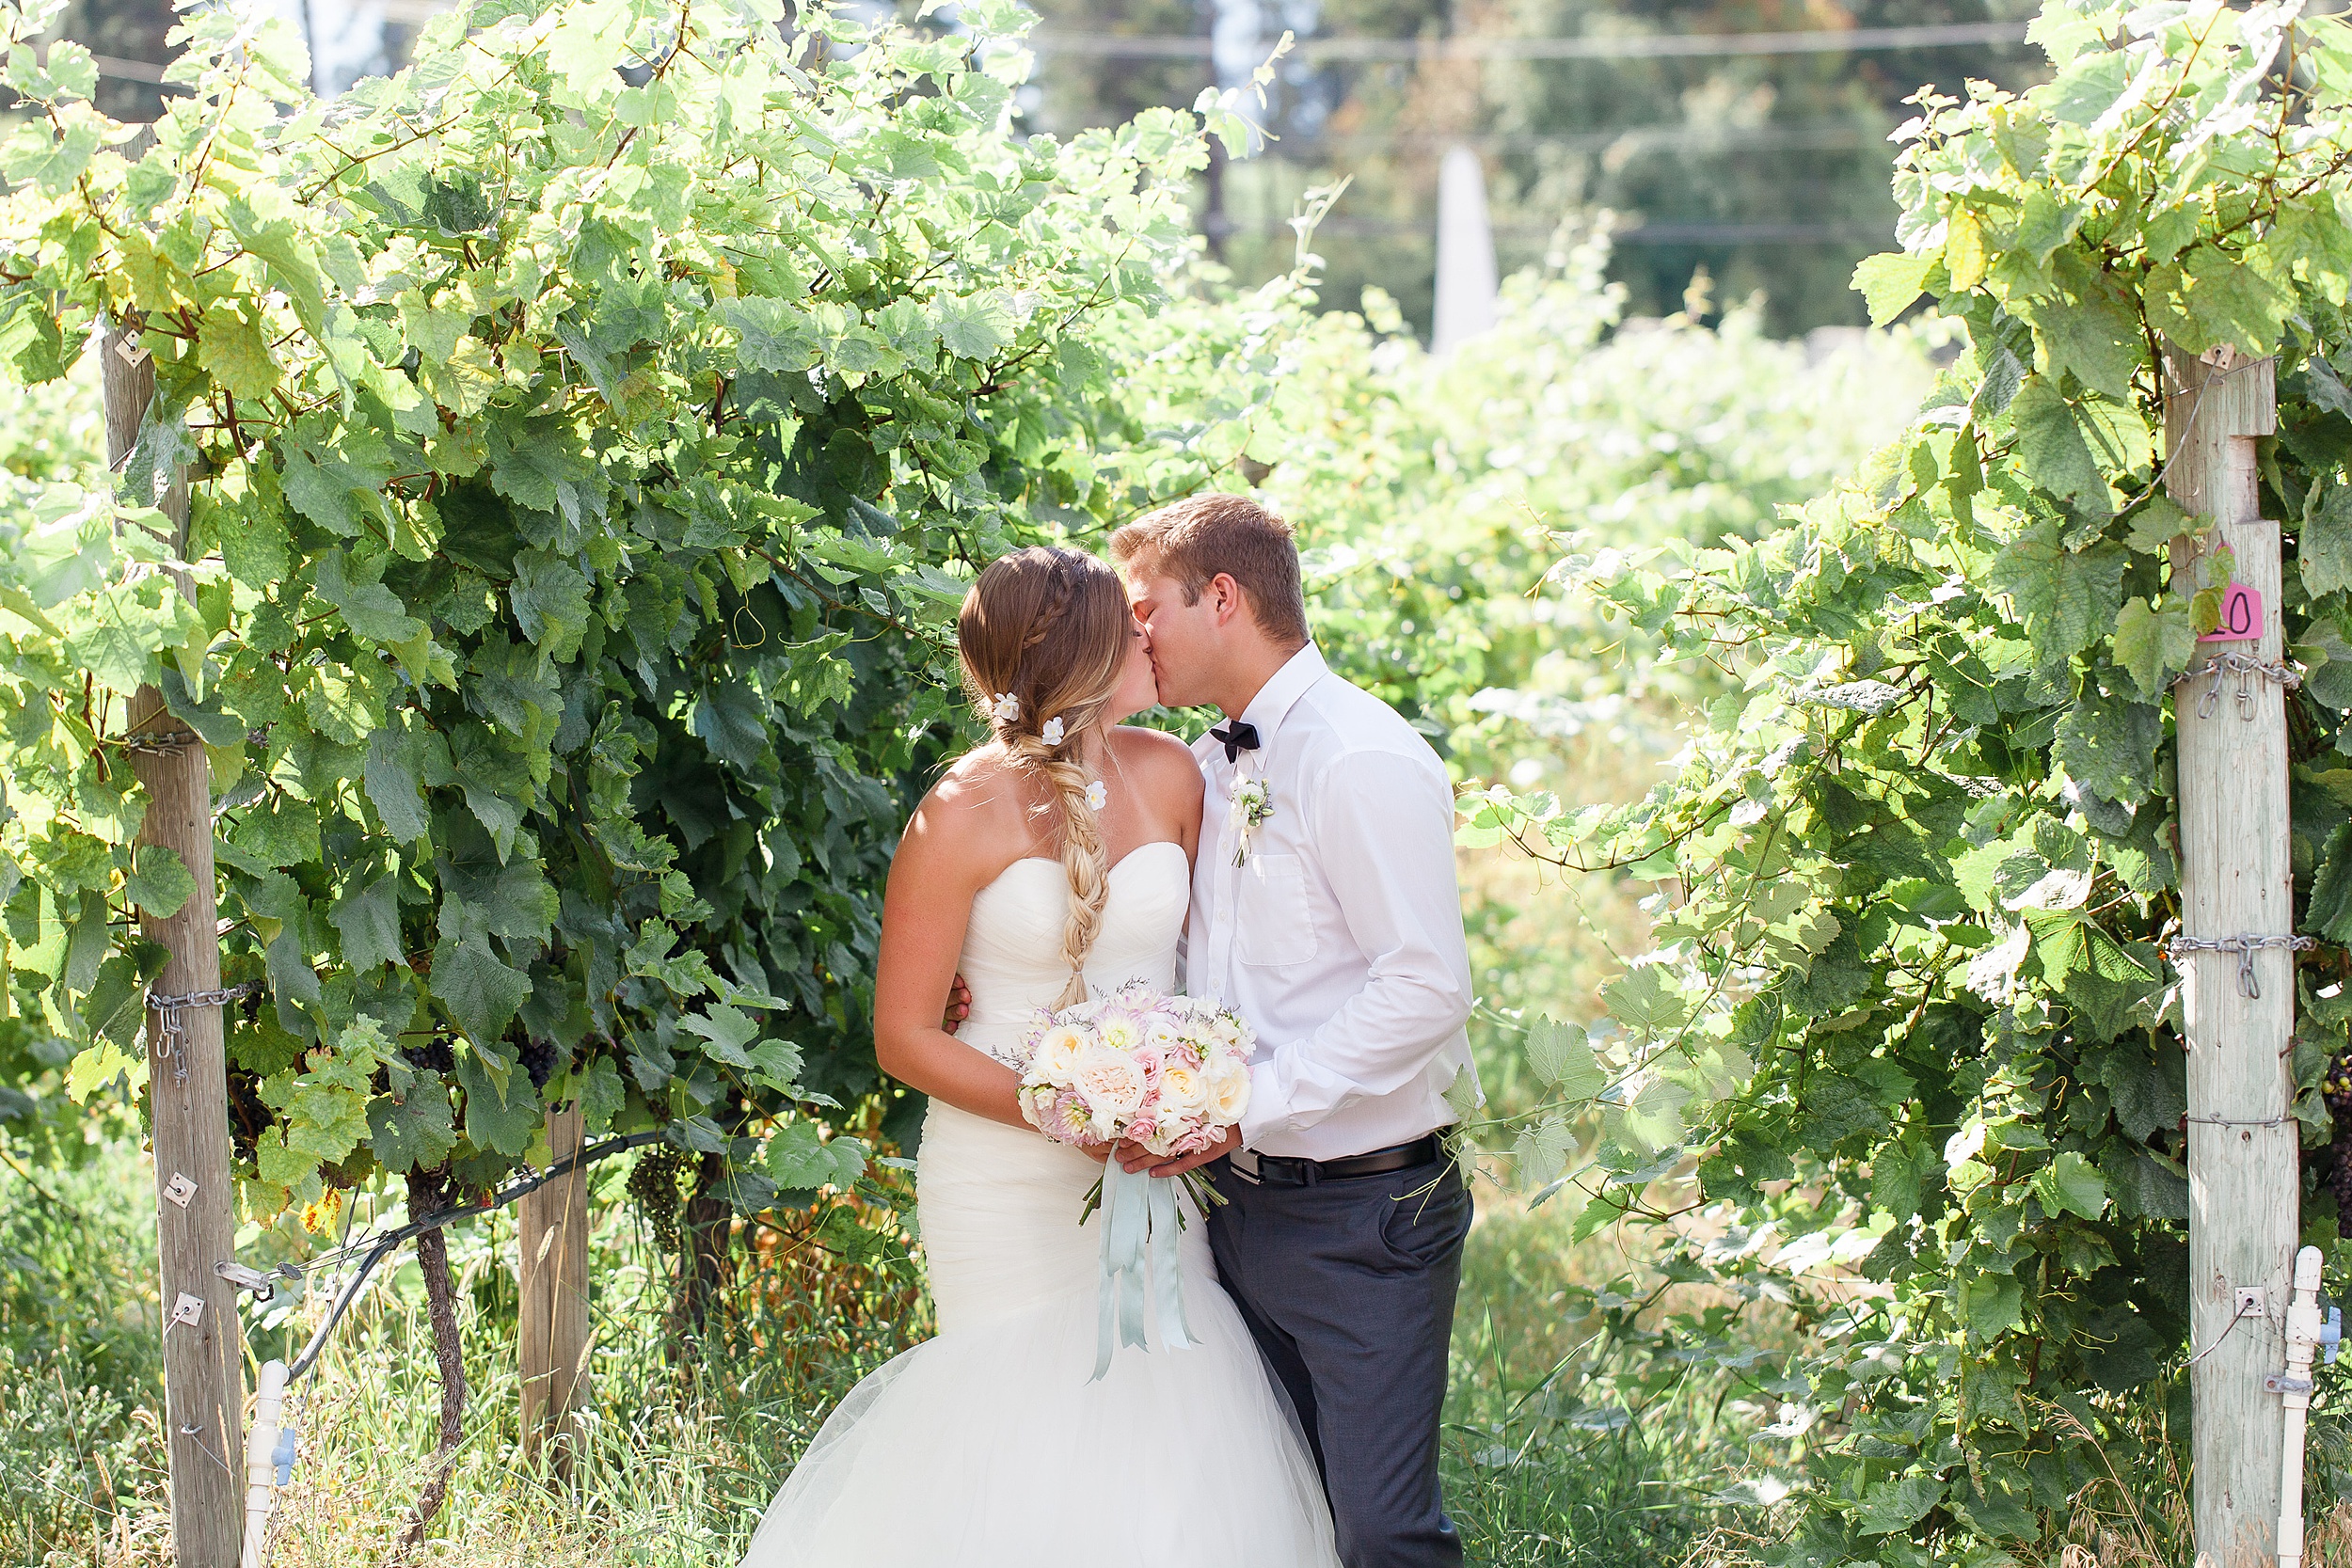 newlyweds kiss amongst grapes at a winery fitzpatrick winery